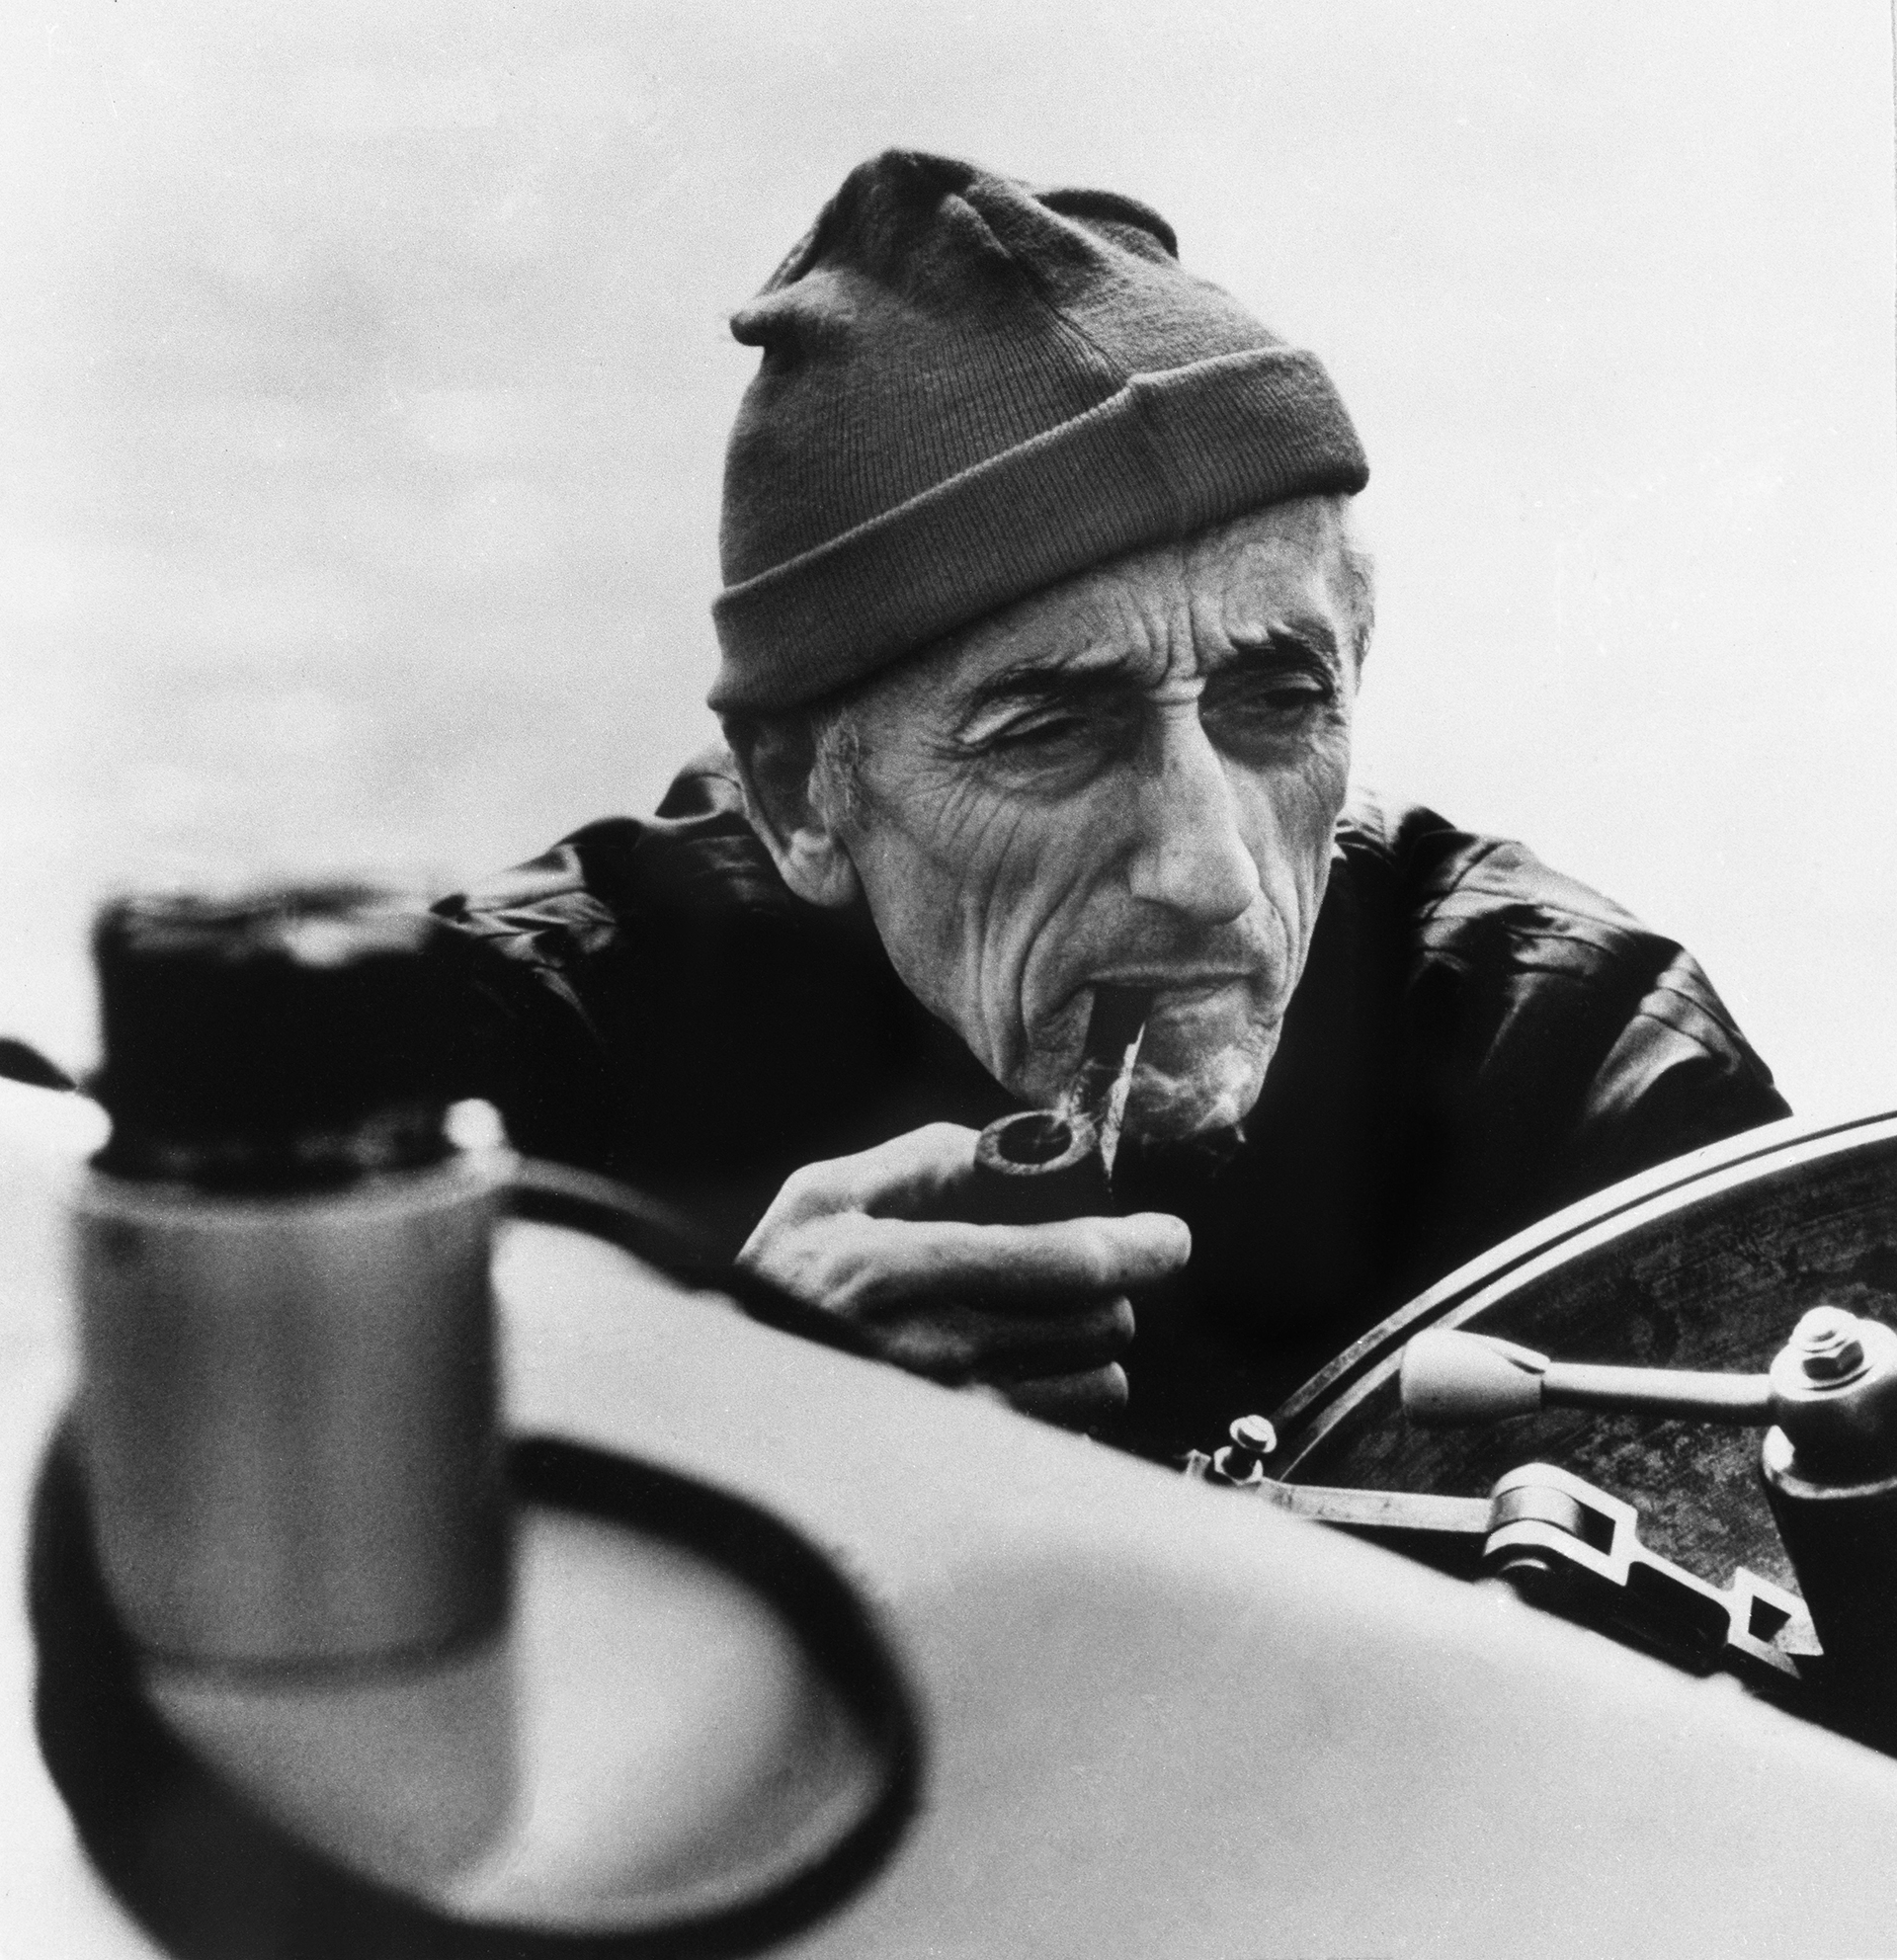 A partir de la década del sesenta, Cousteau se convirtió en uno de los principales conservacionistas. Luchó por defender las especies marítimas y por difundir su mensaje ecologista
(Photo by Bettmann Archive/Getty Images)